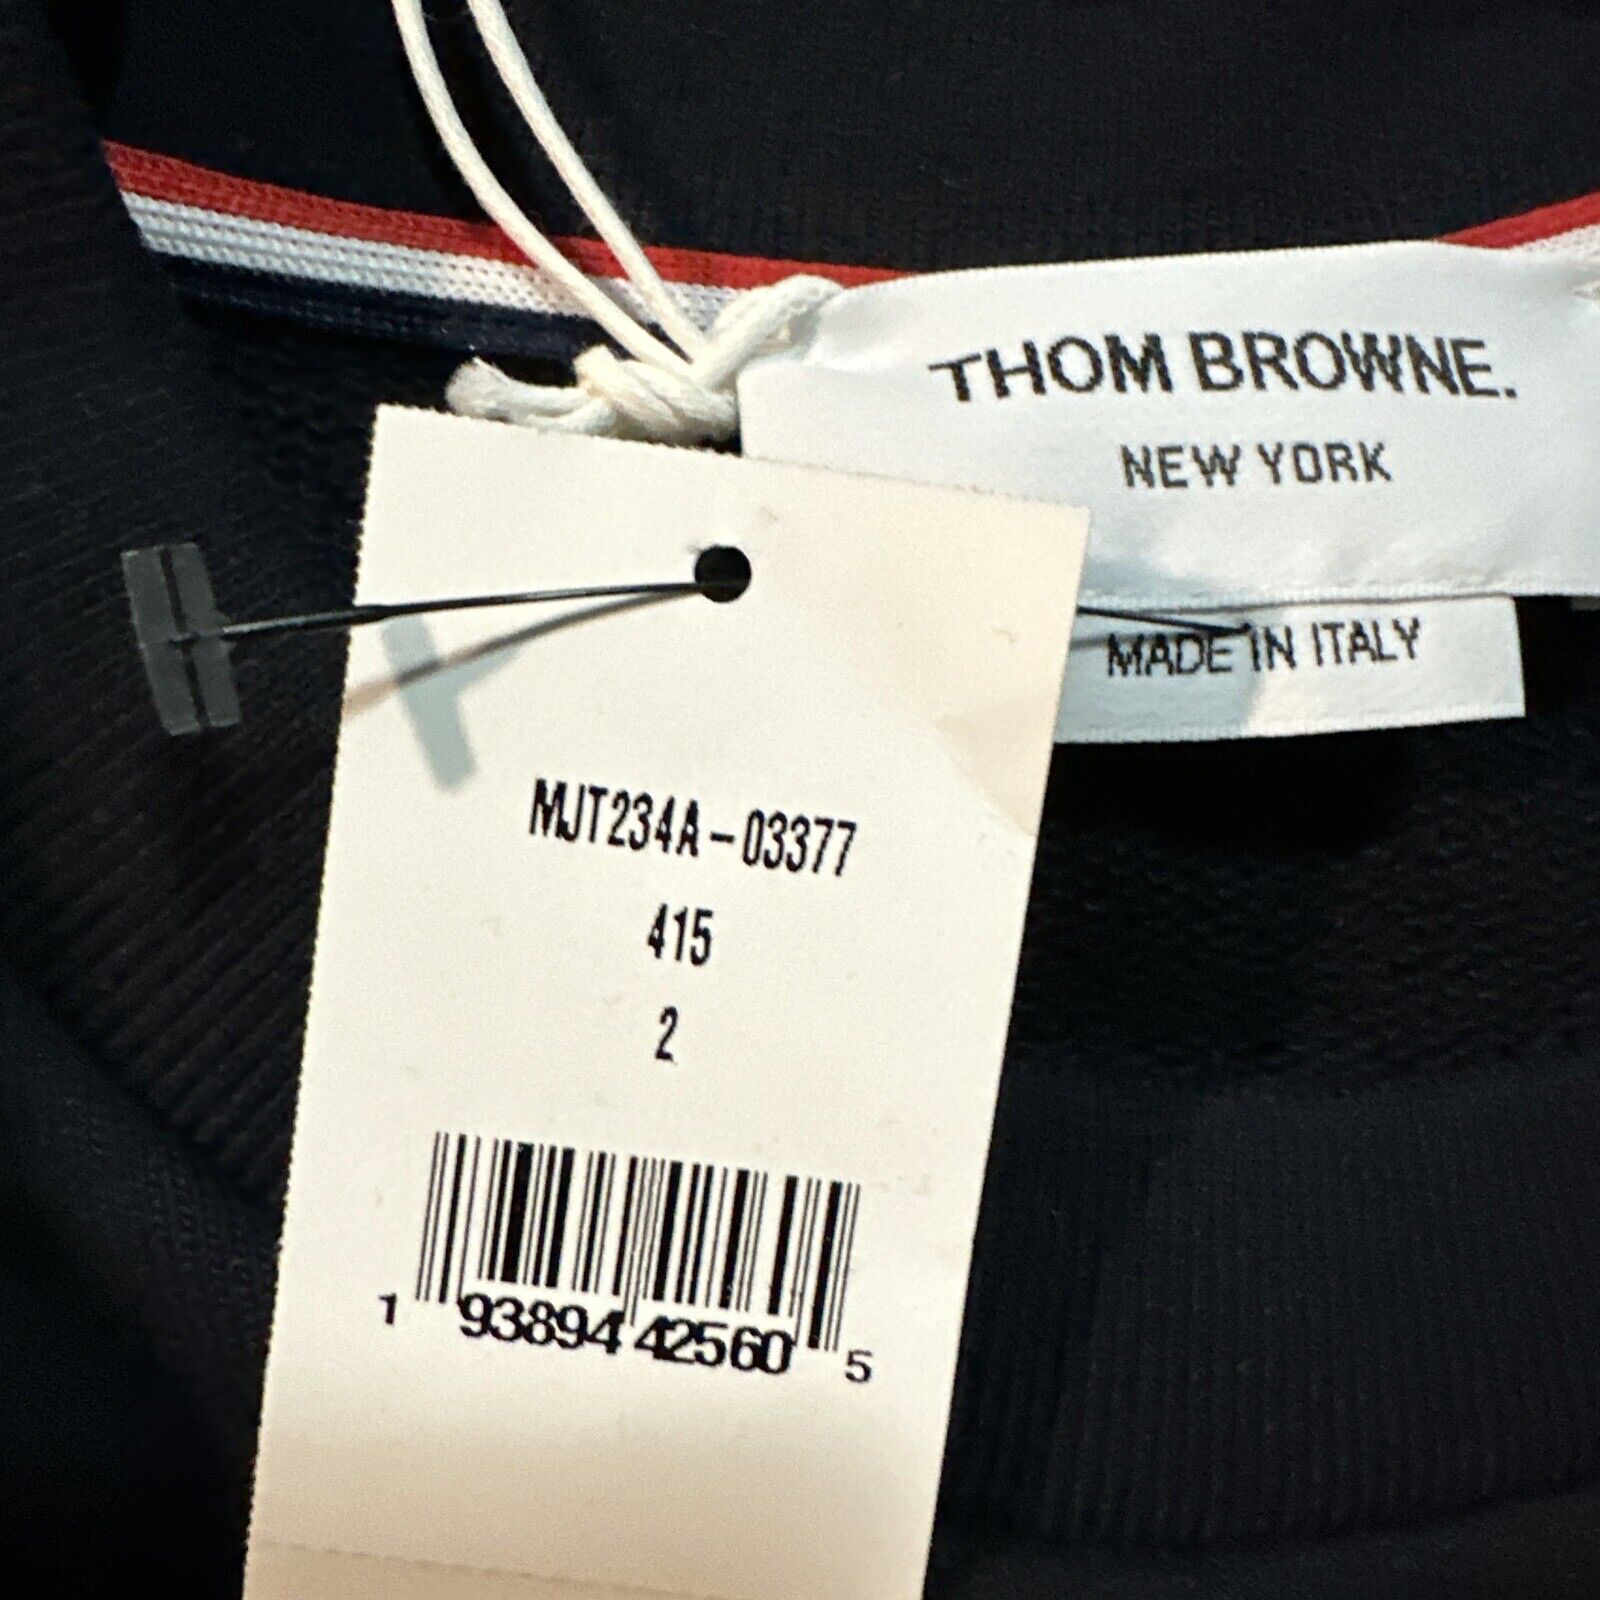 Мужской свитшот с круглым вырезом NWT Thom Browne, пуловер темно-синий M (2) Италия